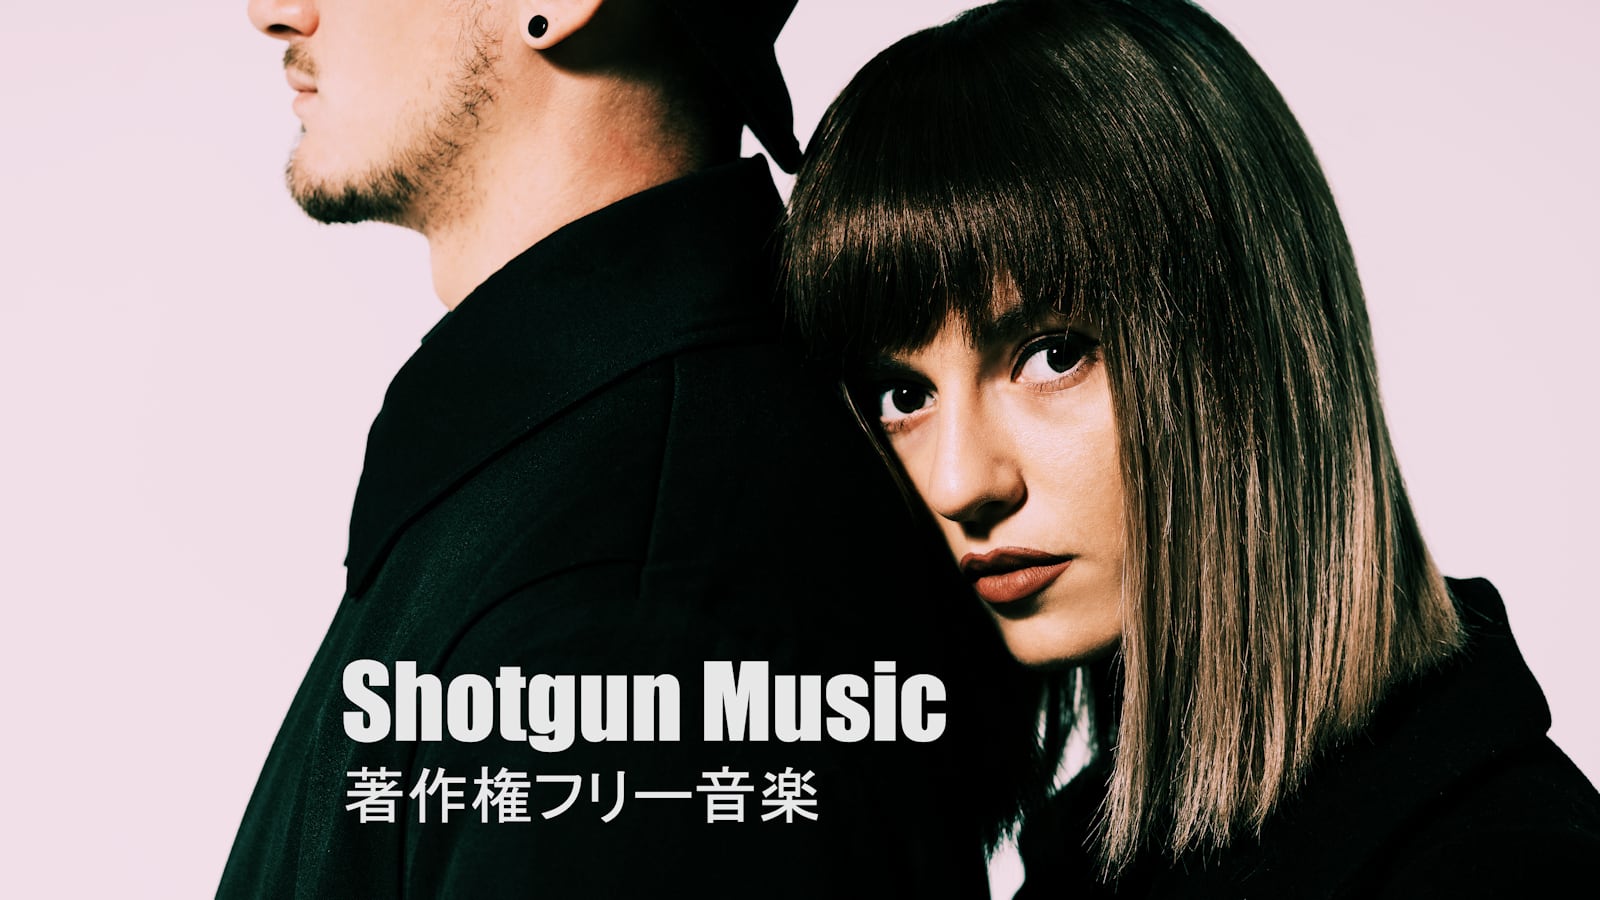 Shotgun Music Promotion